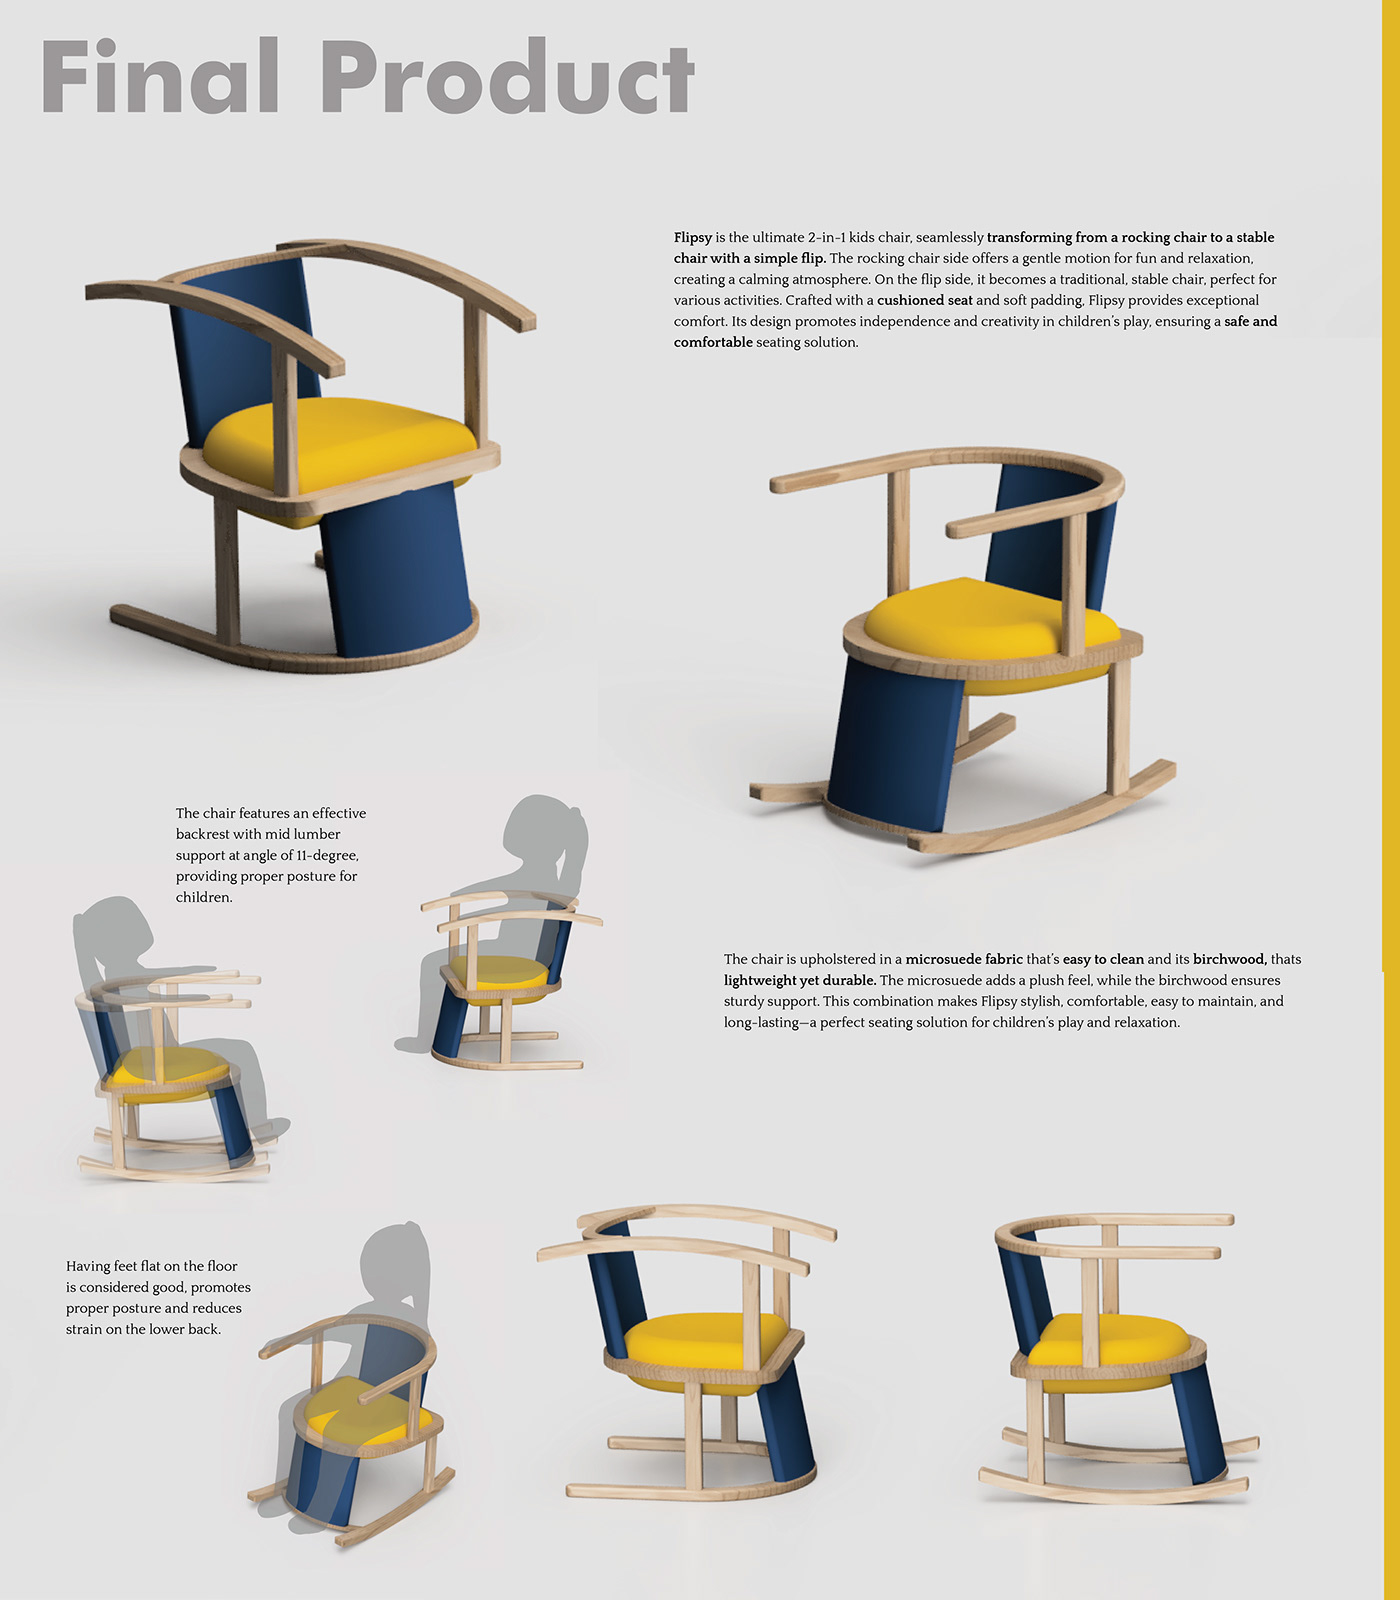 furniture chair Playful play flip 3d render kids furniture design kids rocking chair kidsfurniture rockingchair